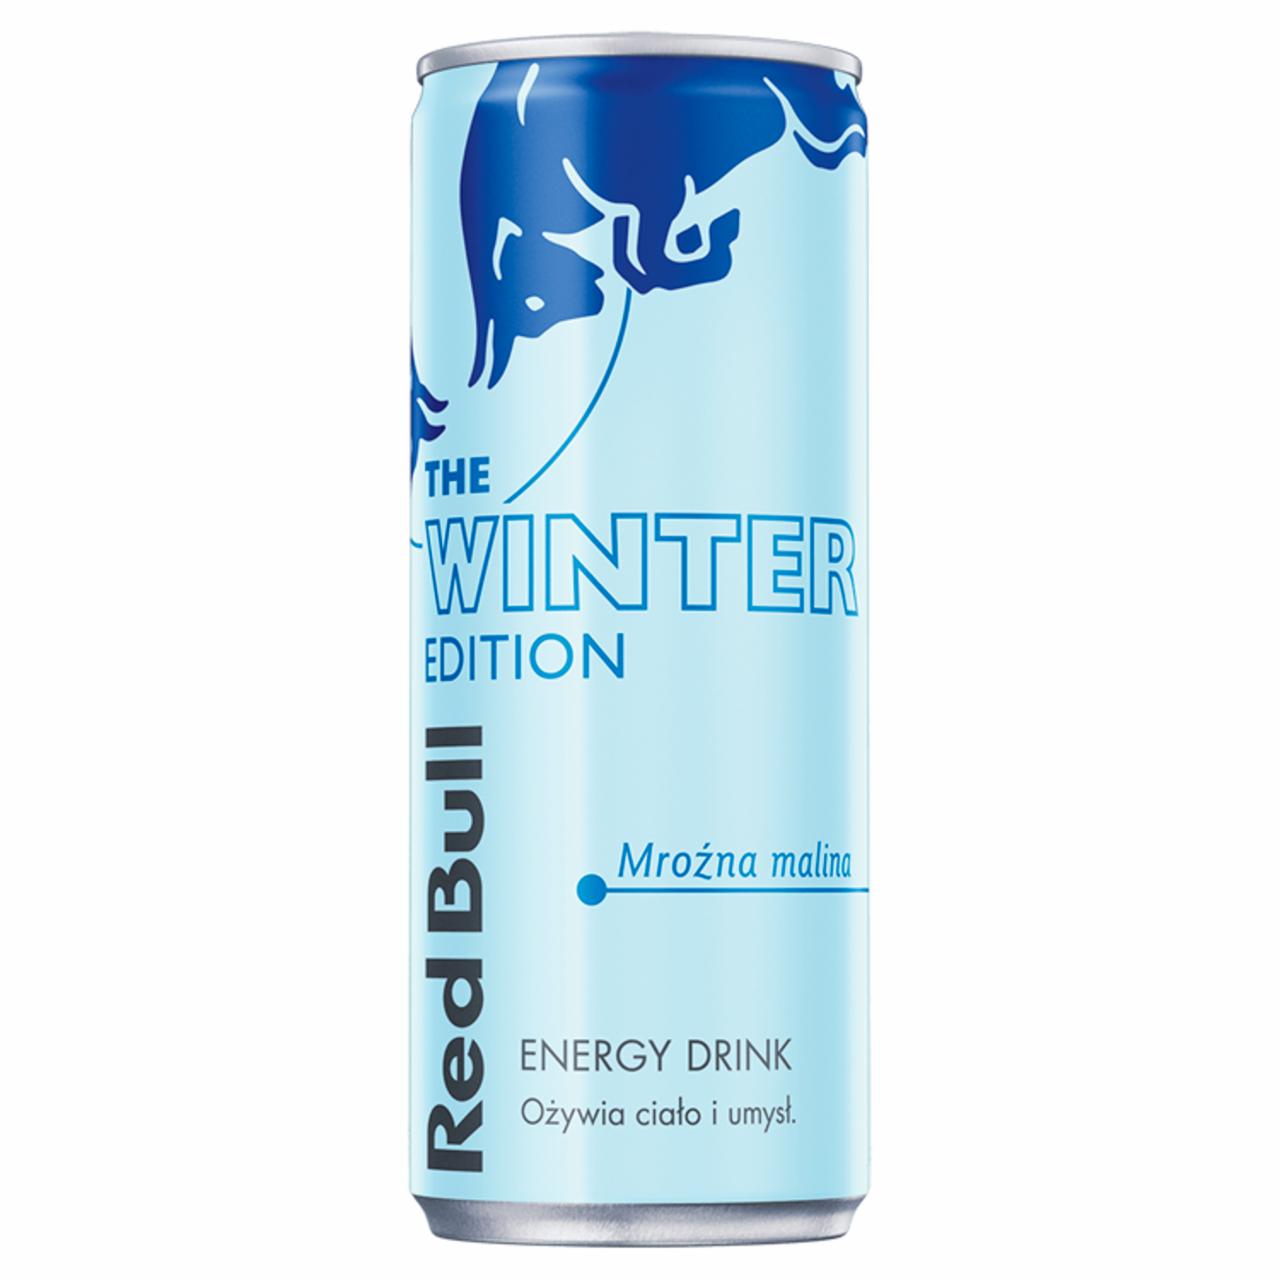 Zdjęcia - Red Bull The Winter Edition Napój energetyczny mroźna malina 250 ml